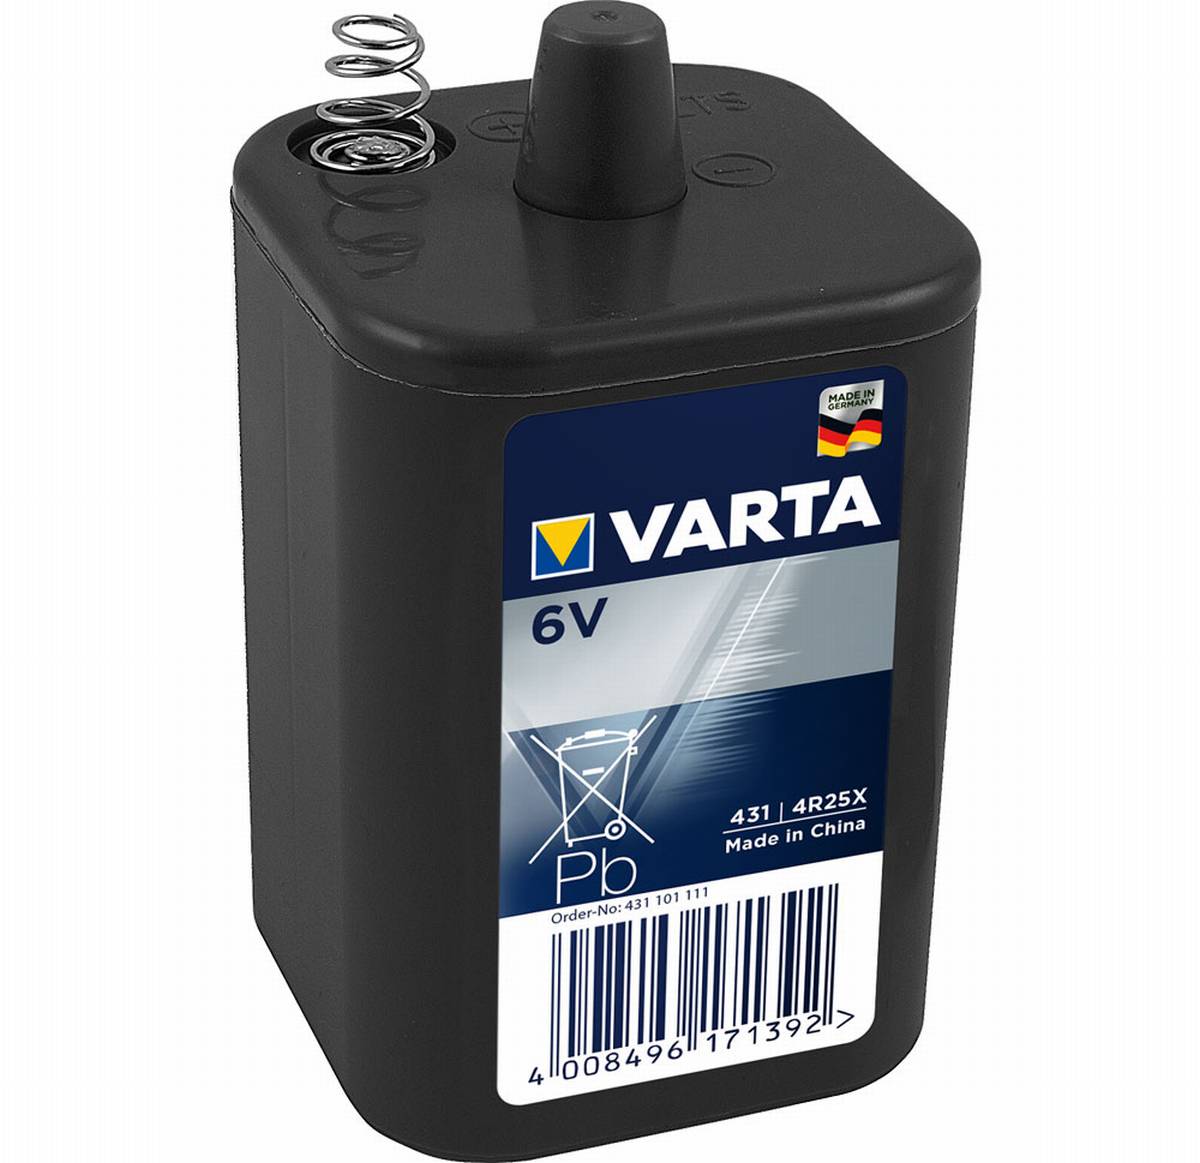 Varta Professional 431 4R25X 6V Block Battery Motor 8.5Ah Zinc Carbon (sciolto)